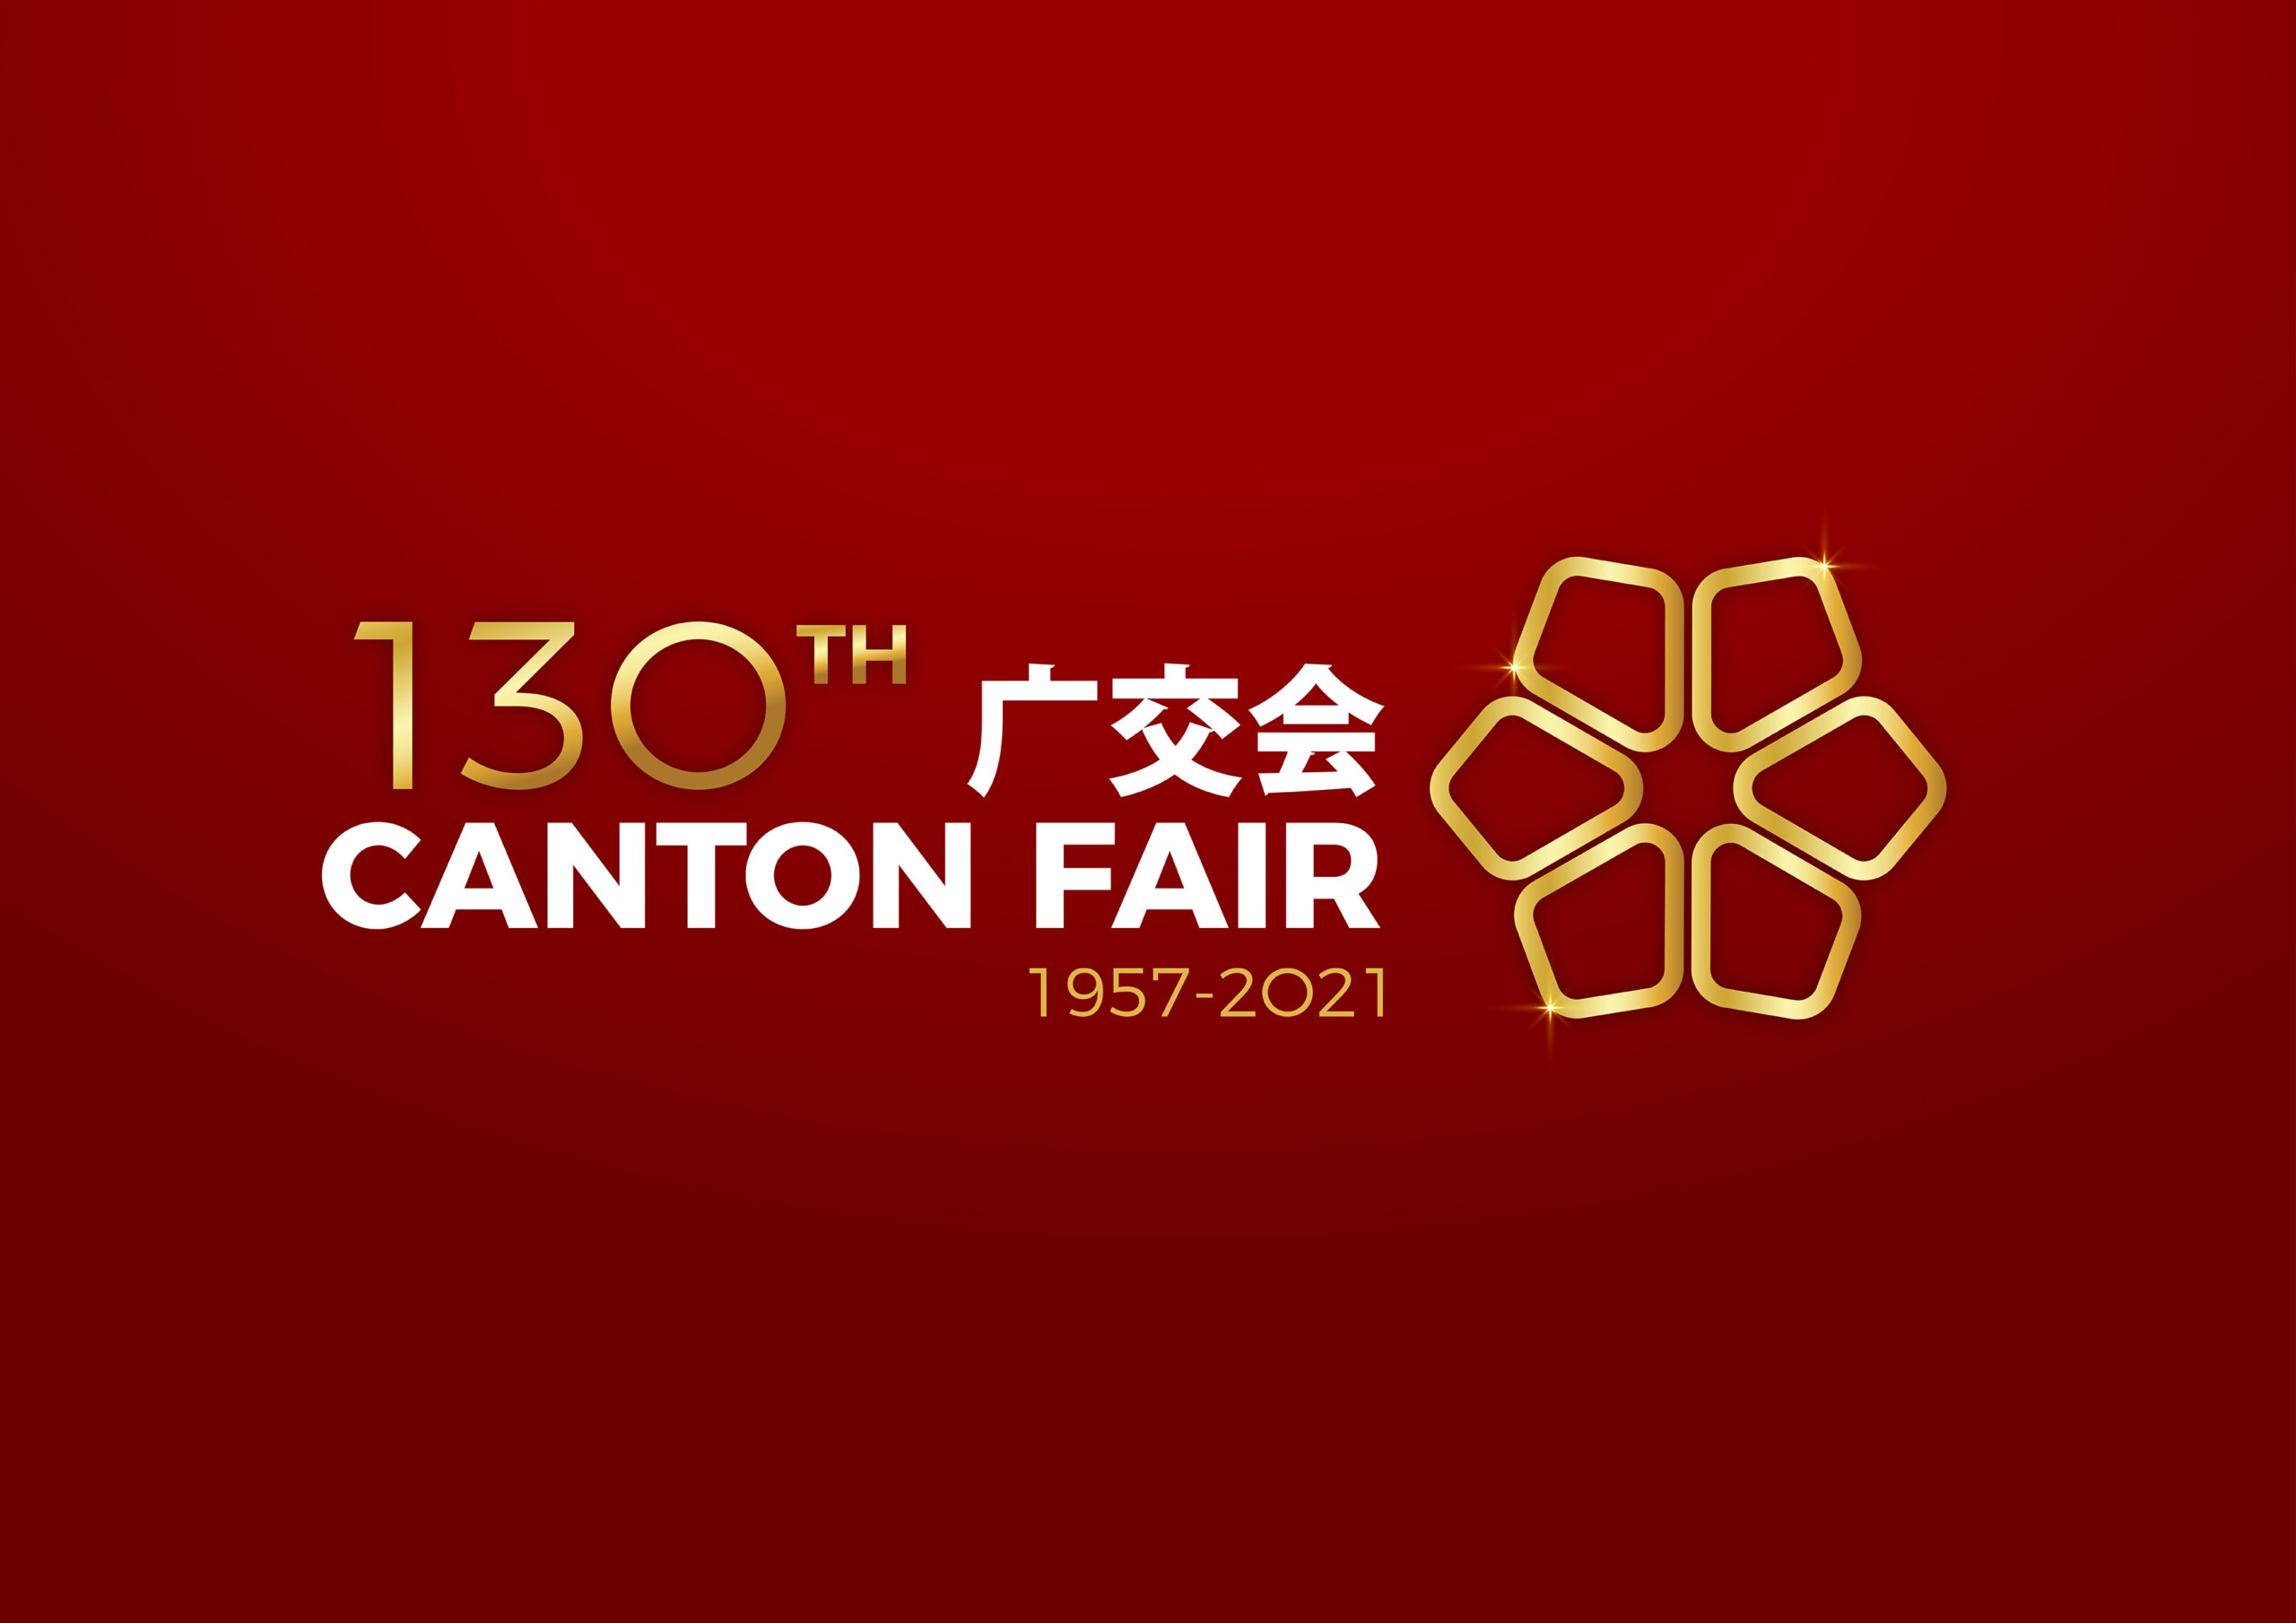 canton fair logo